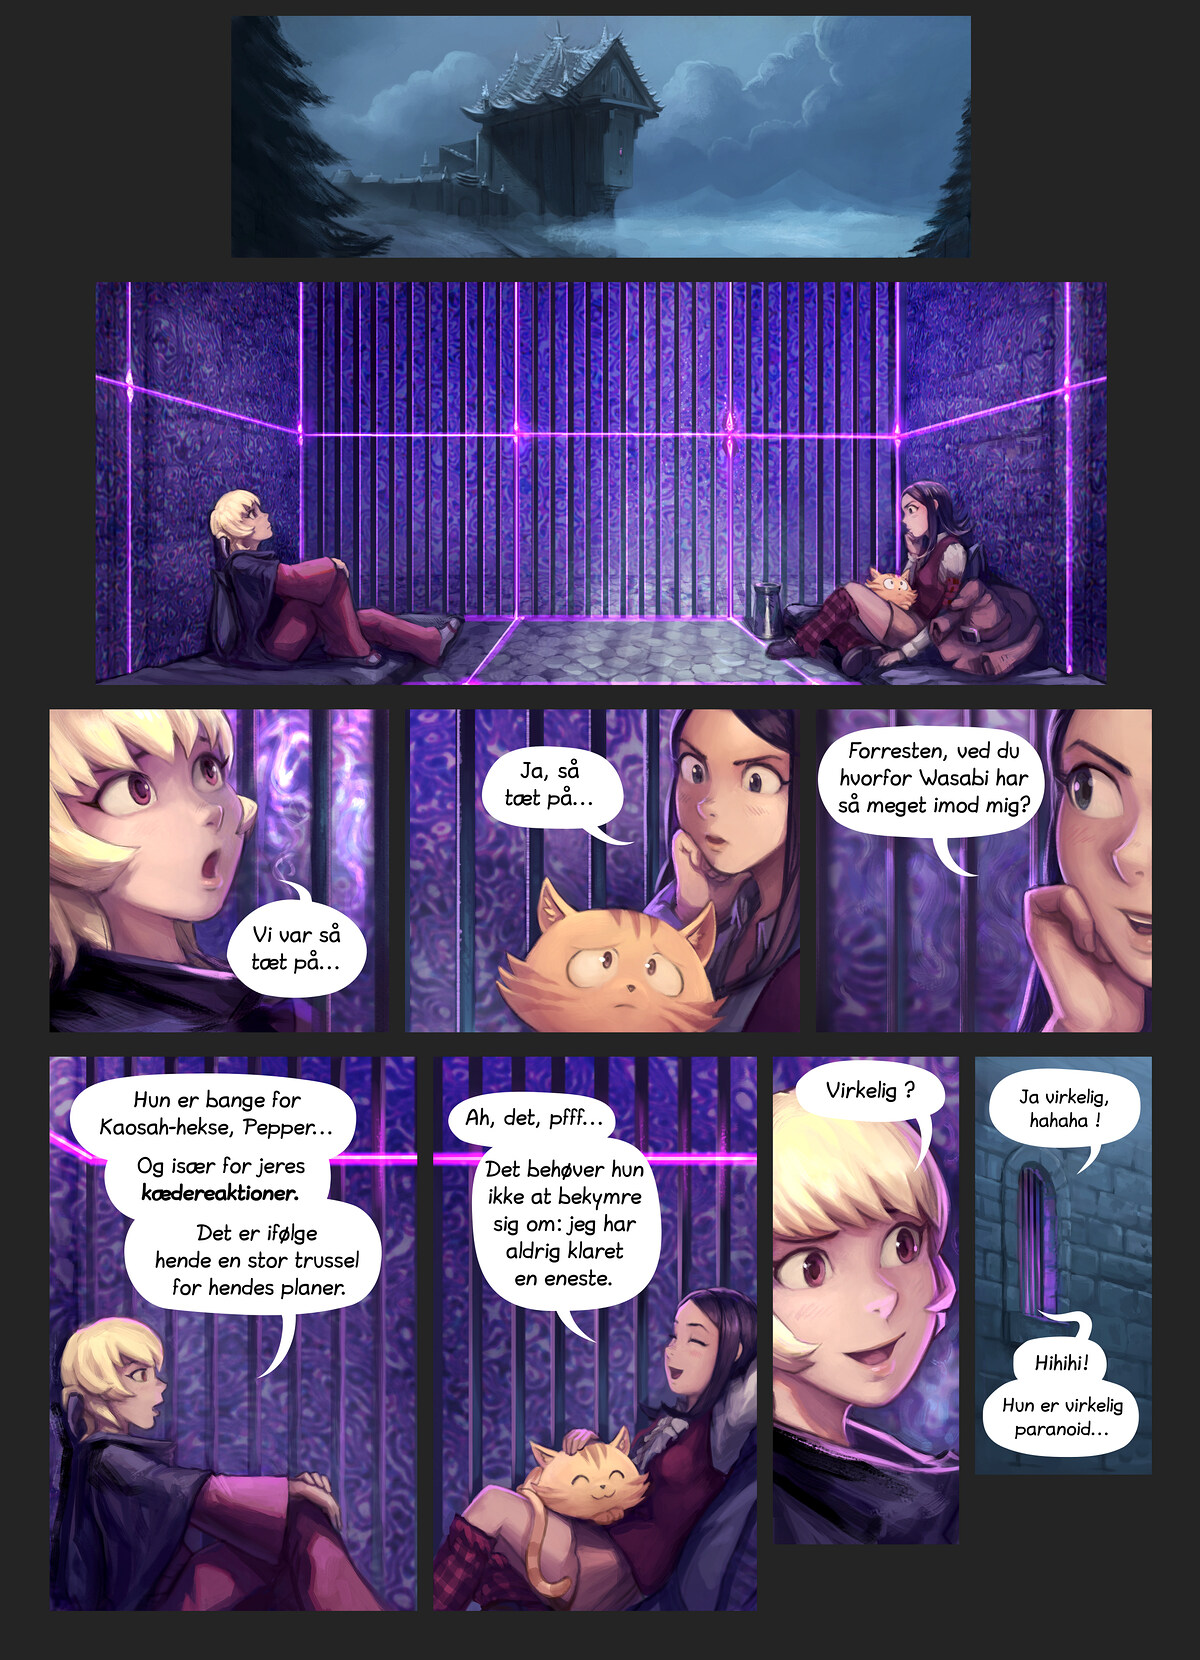 Episode 36: Overraskelsesangrebet, Page 6